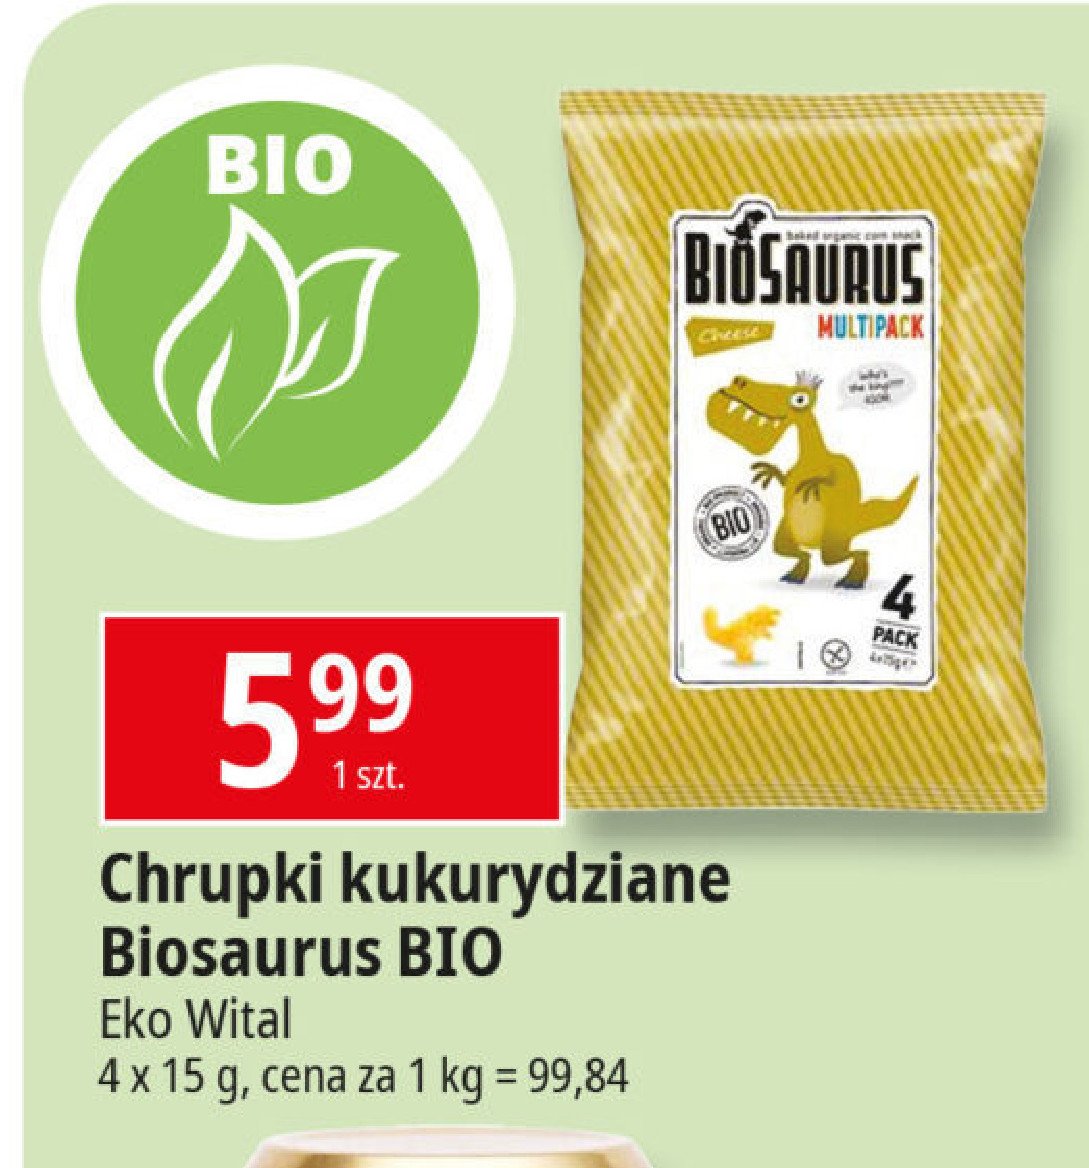 Chrupki kukurydziane multipack Biosaurus promocja